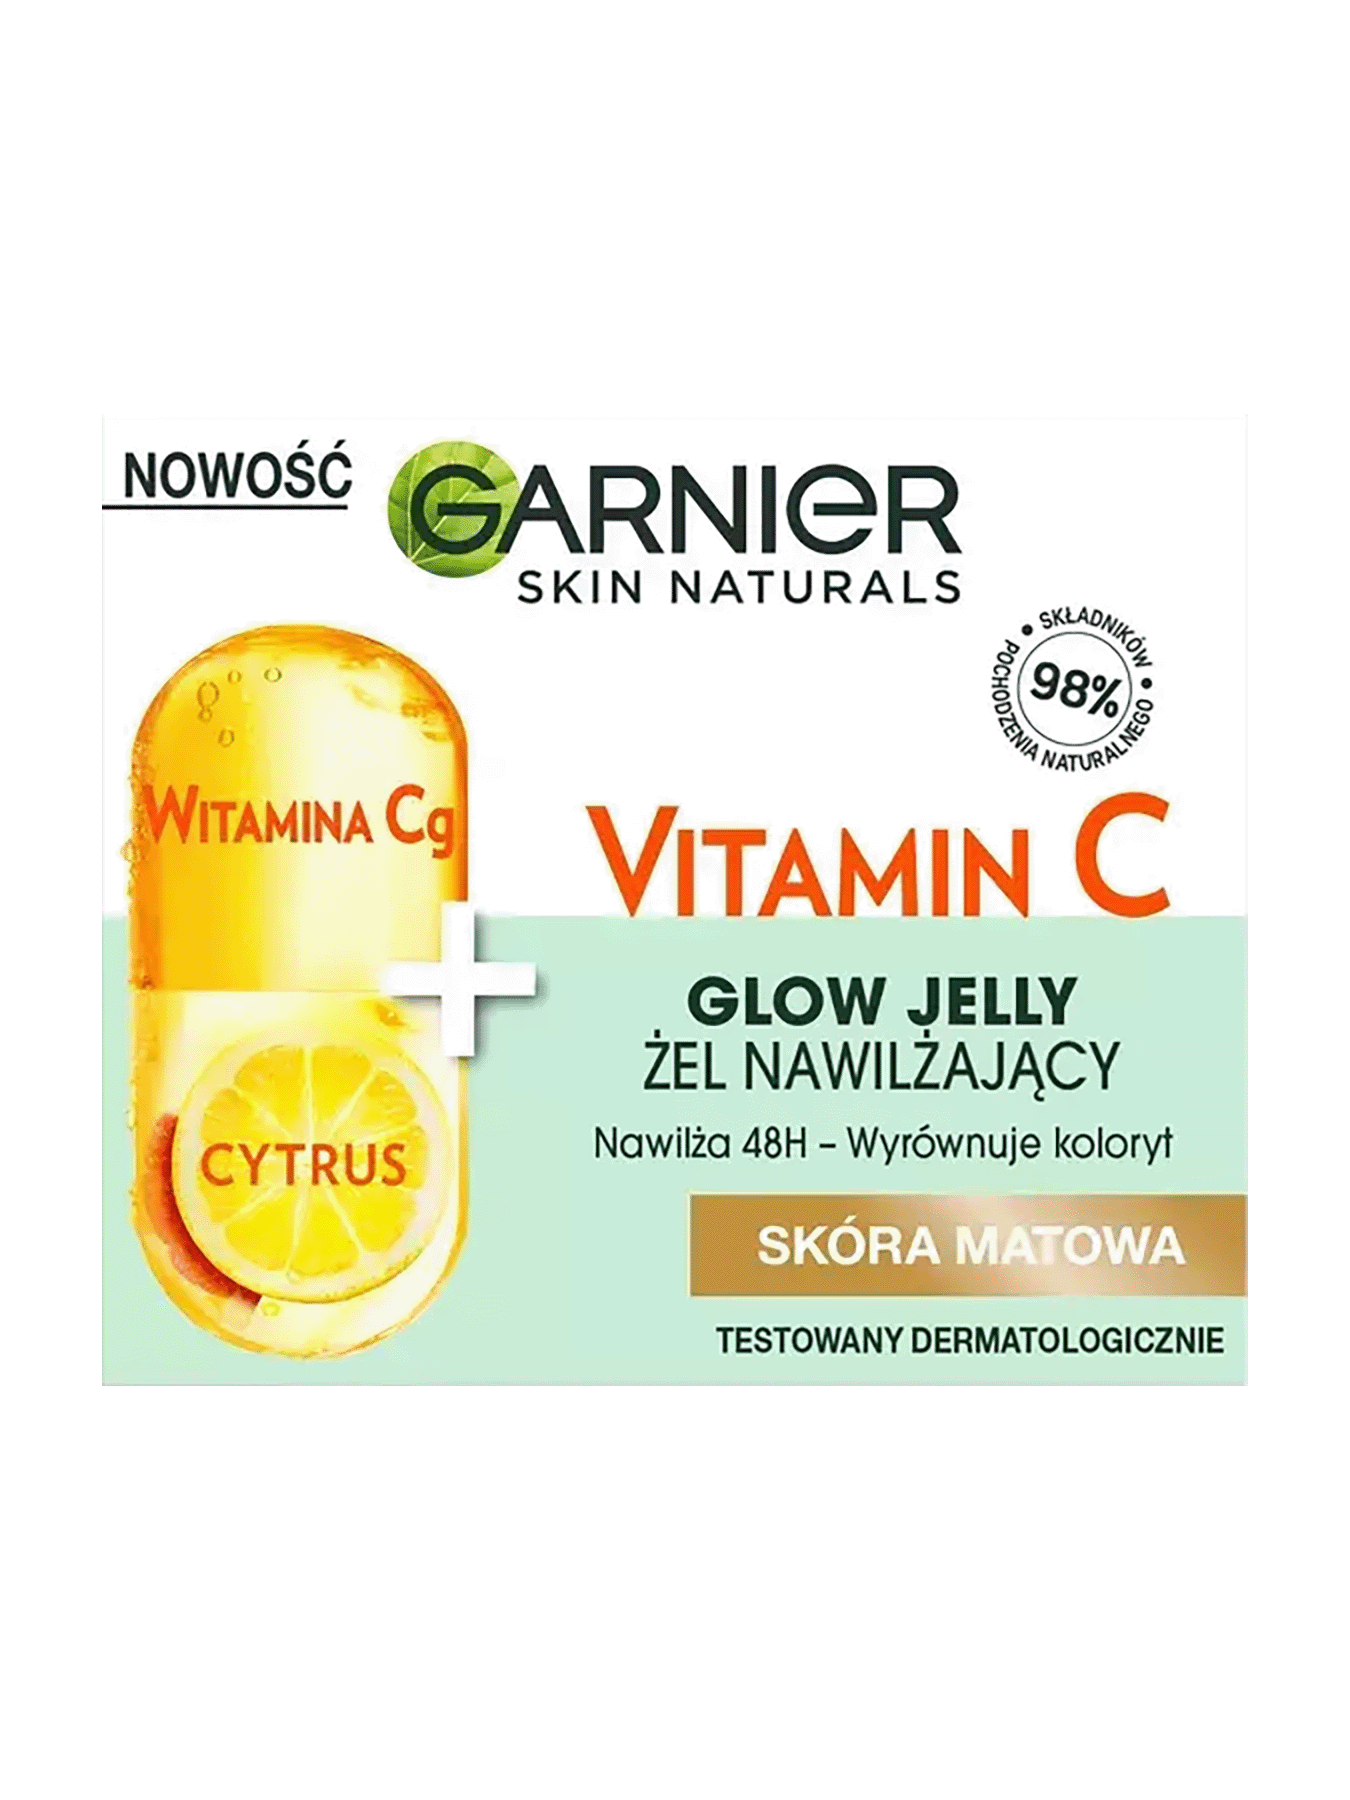 krem zel vitamin c 2 1350x1800